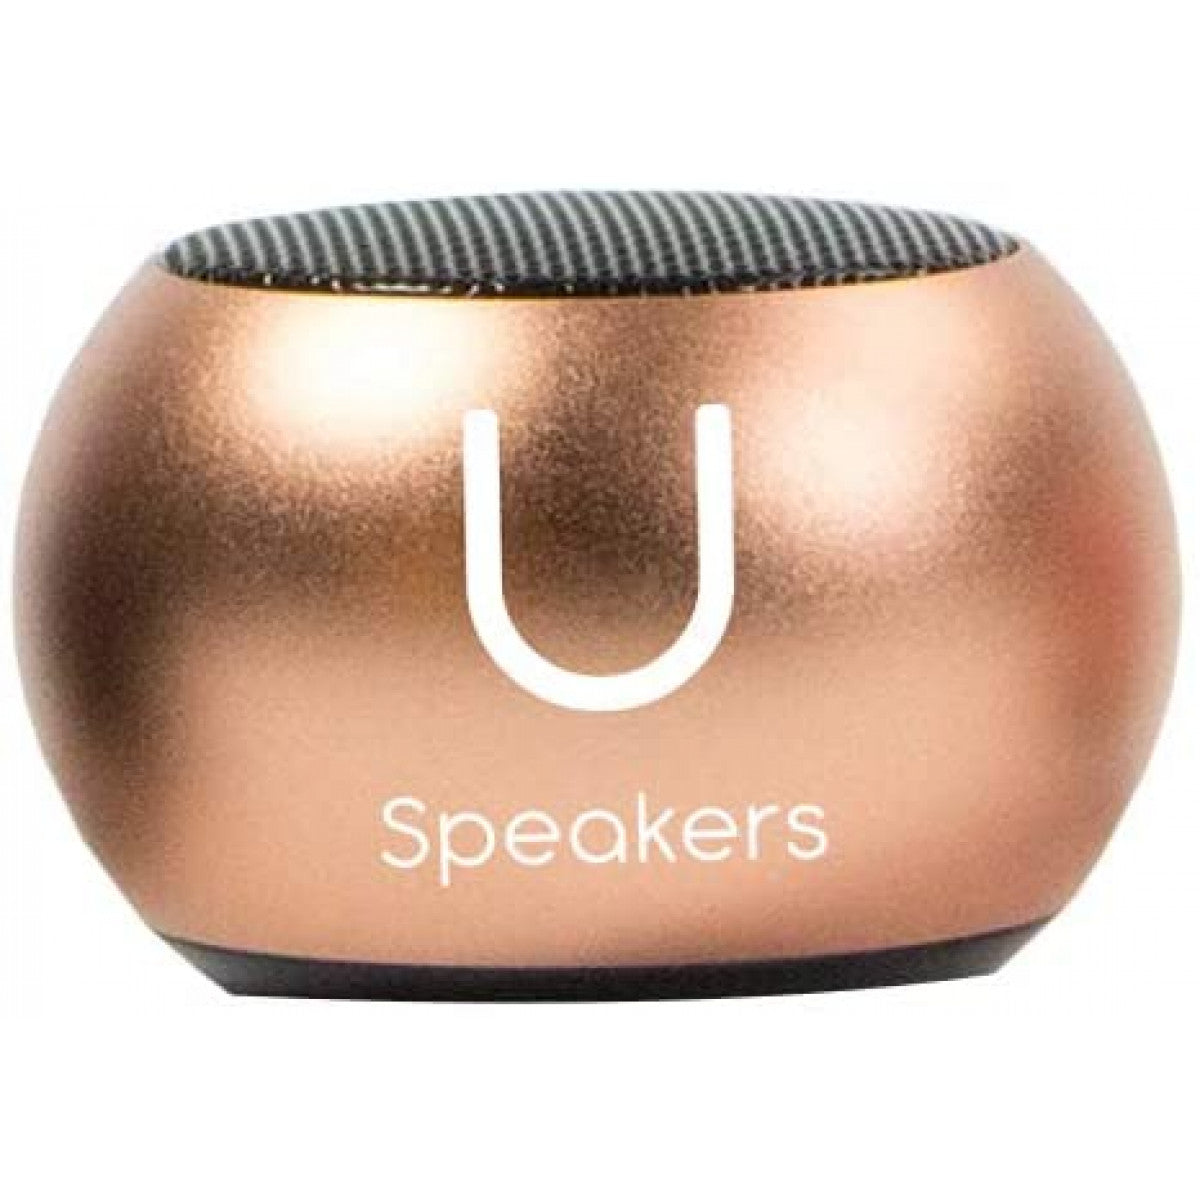 30-Mini Ultimate U Speakers